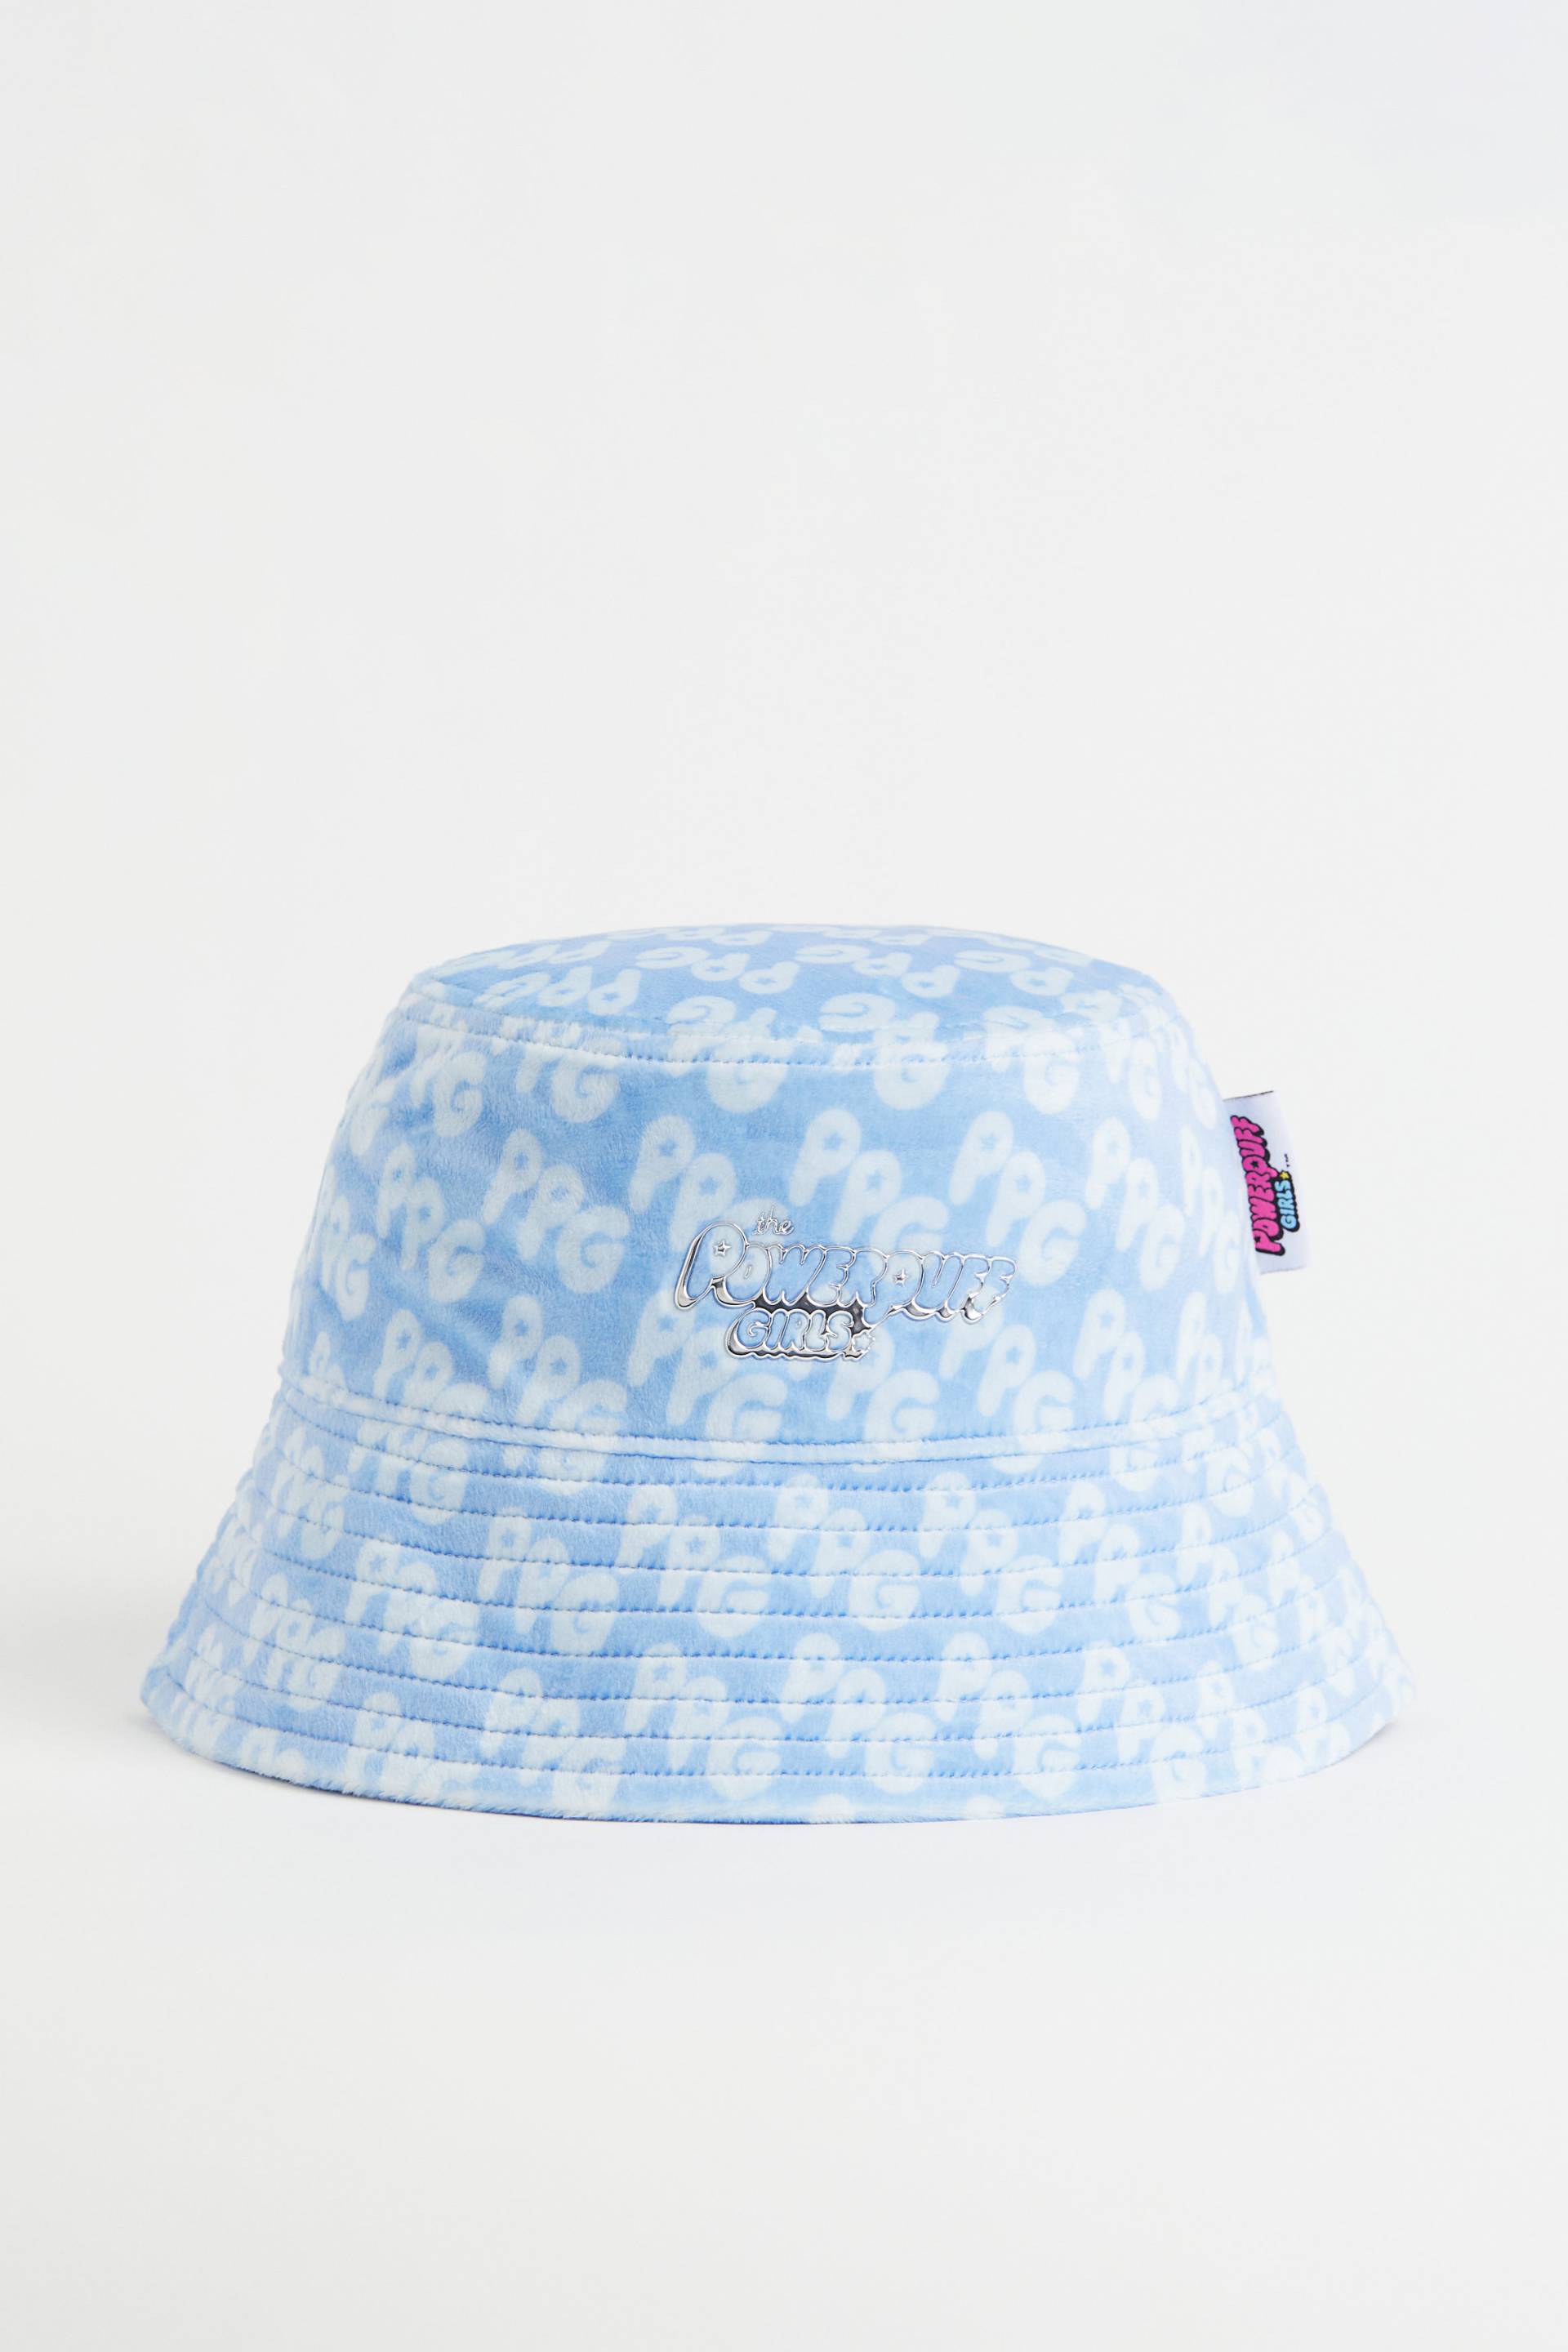 H&M Bucket Hat aus Velours Hellblau/The Powerpuff Girls, Hut in Größe XS/S. Farbe: Light blue/the powerpuff girls von H&M